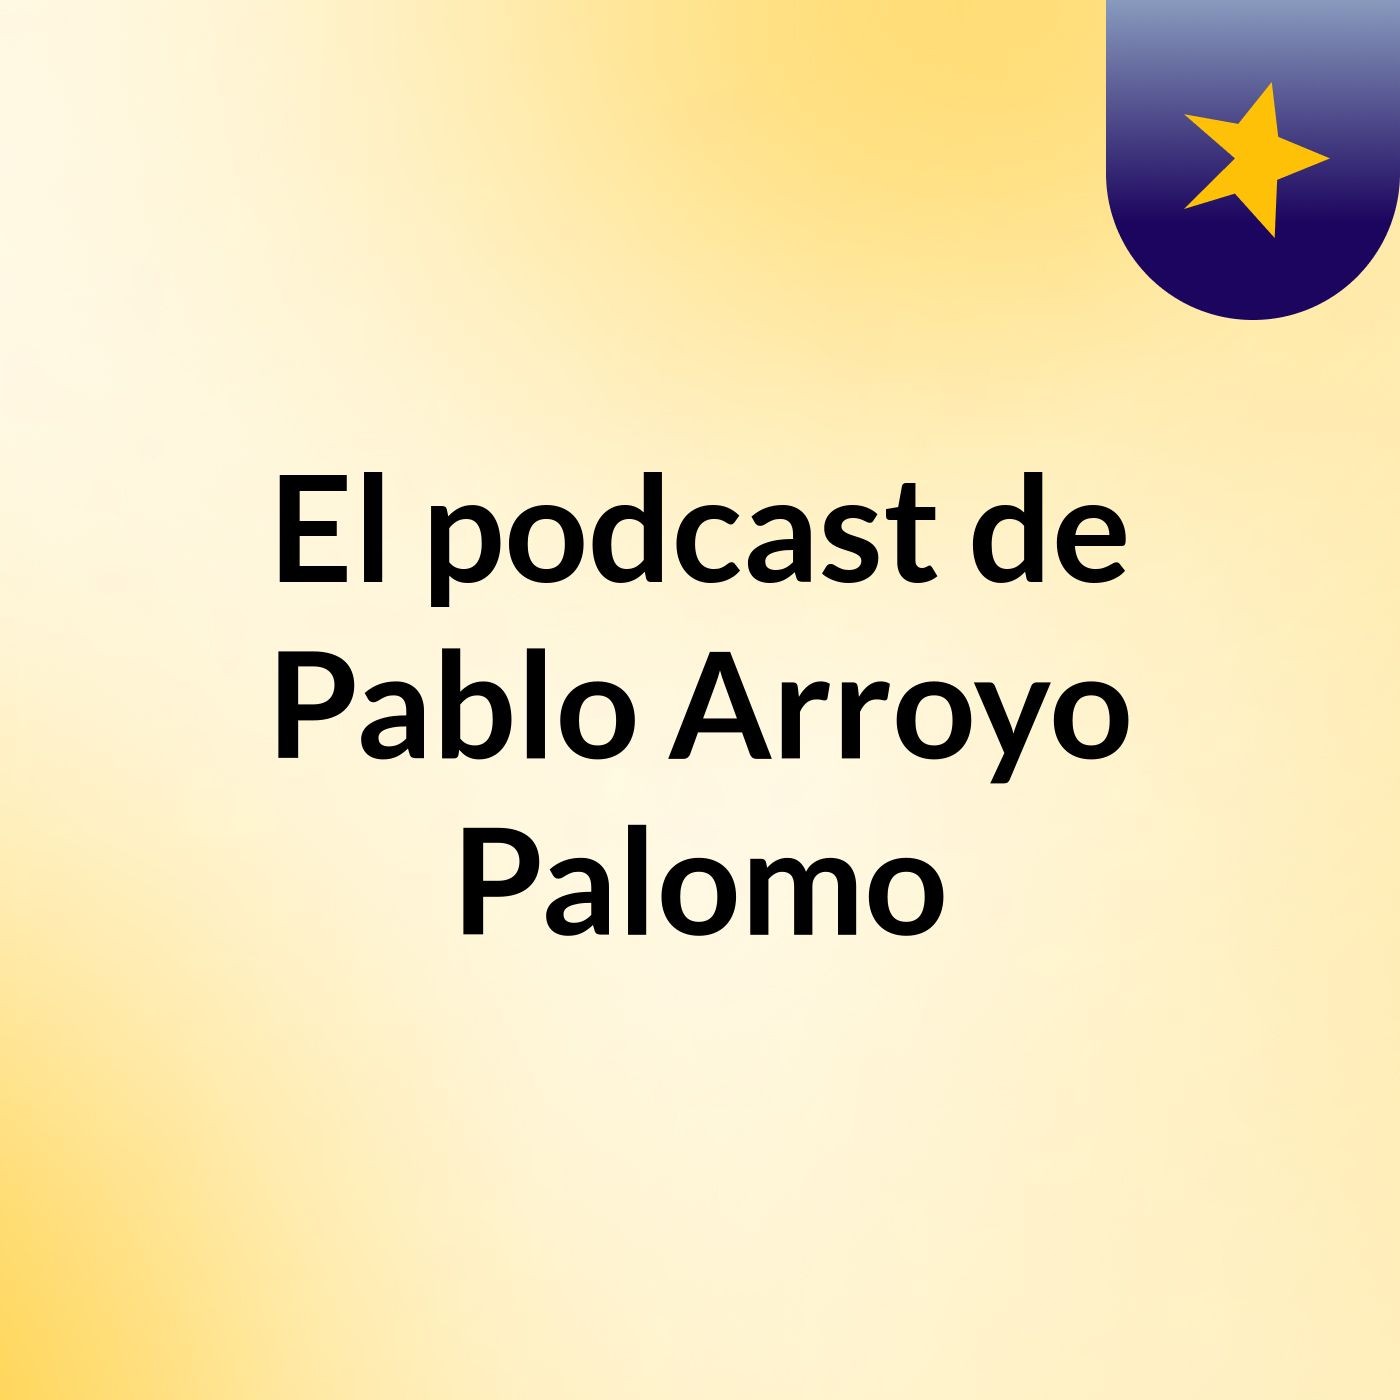 El podcast de Pablo Arroyo Palomo